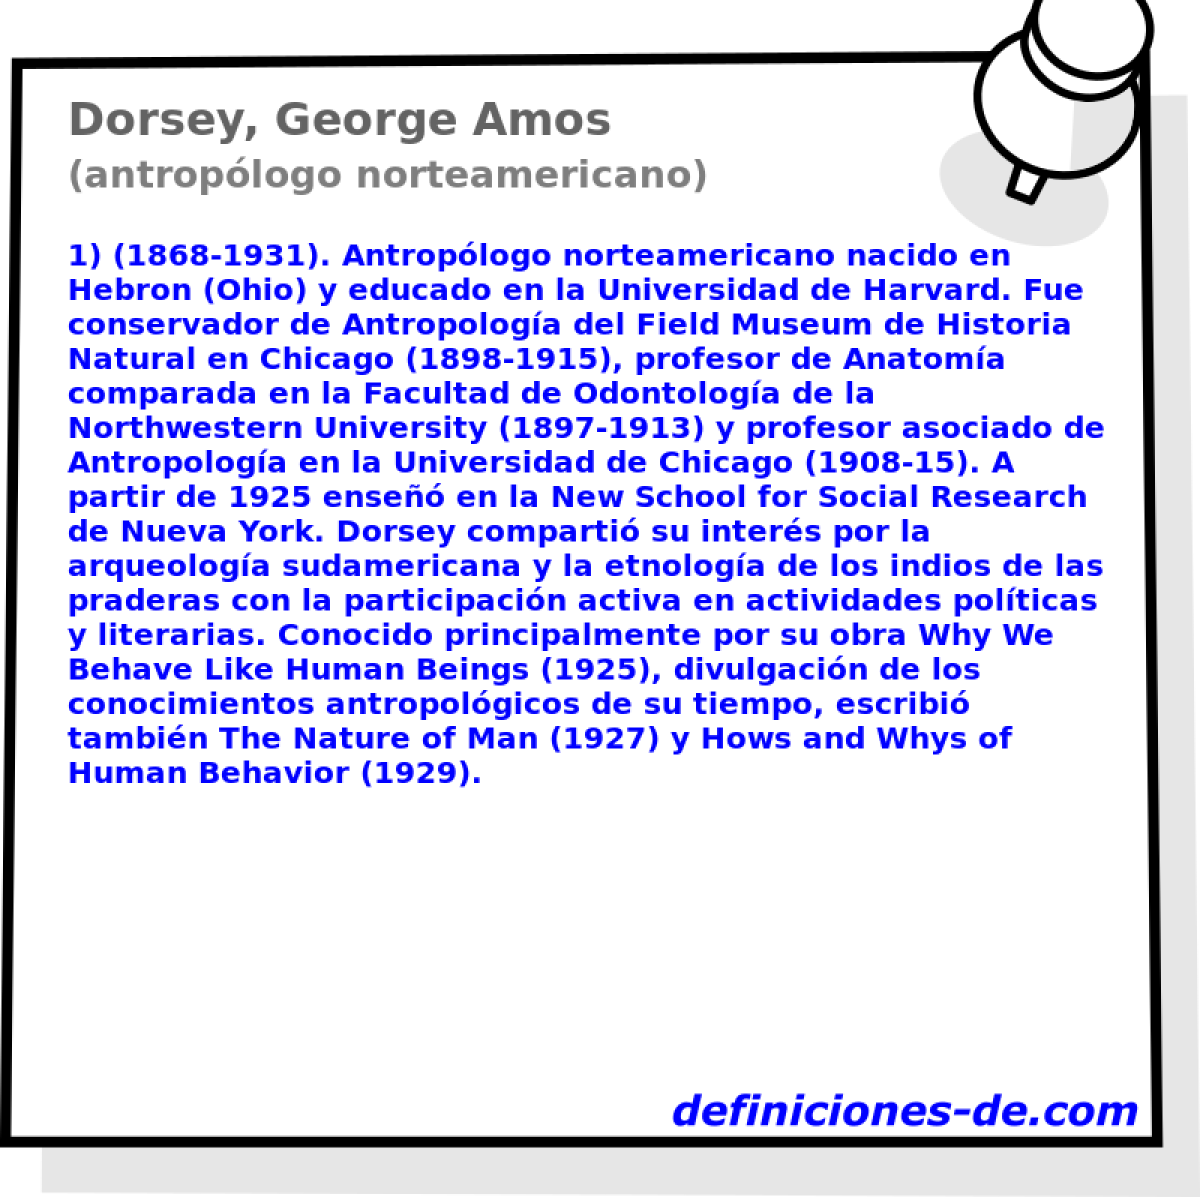 Dorsey, George Amos (antroplogo norteamericano)